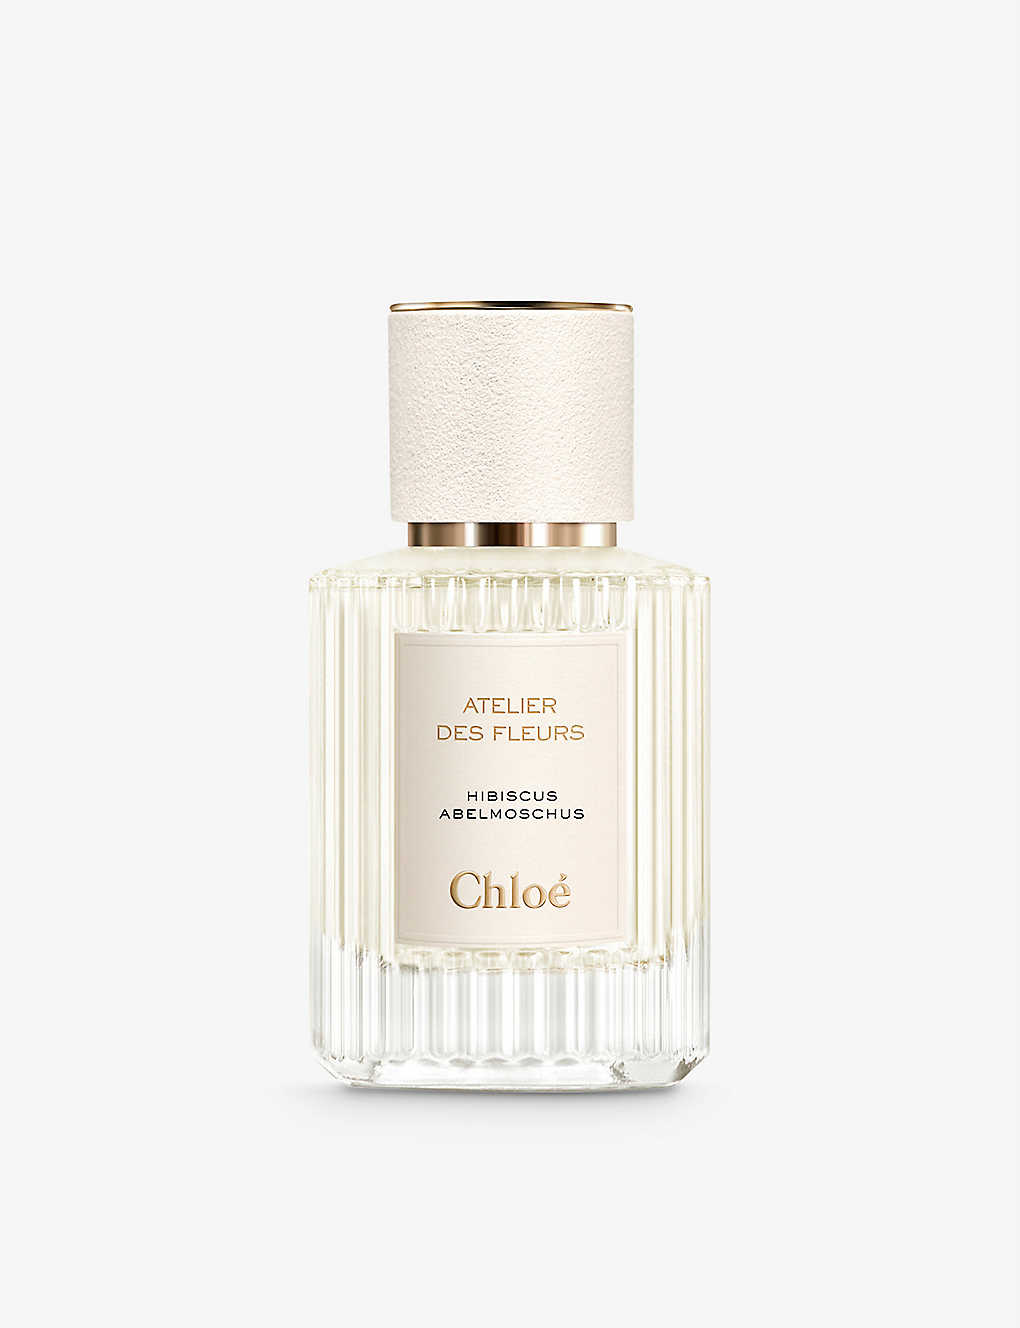 Chloé Atelier Des Fleurs Hibiscus Abelmoschus Eau De Parfum 50ml